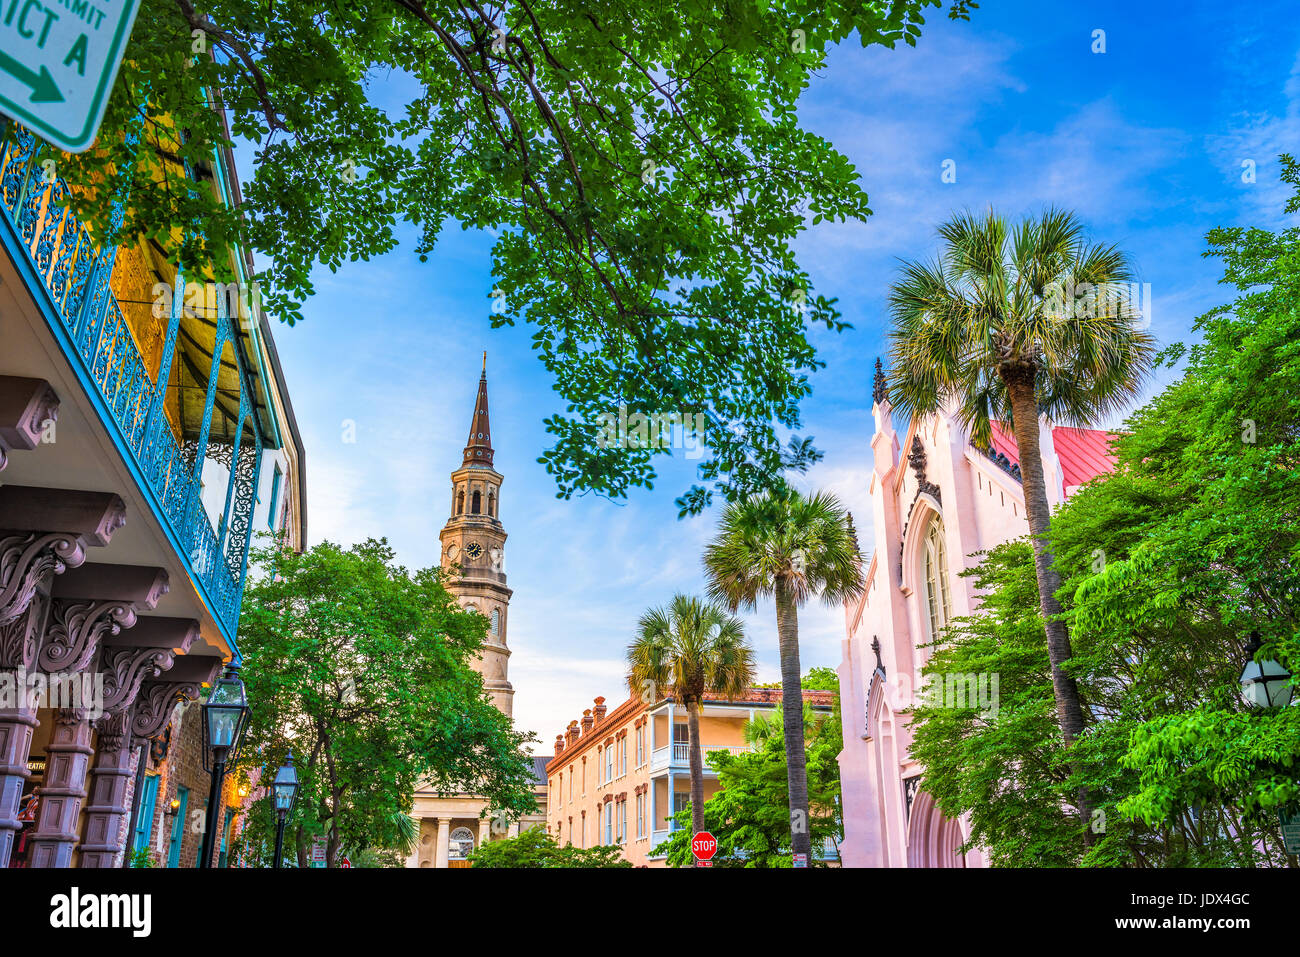 Historische Innenstadt von Charleston, South Carolina, USA Stadtbild. Stockfoto